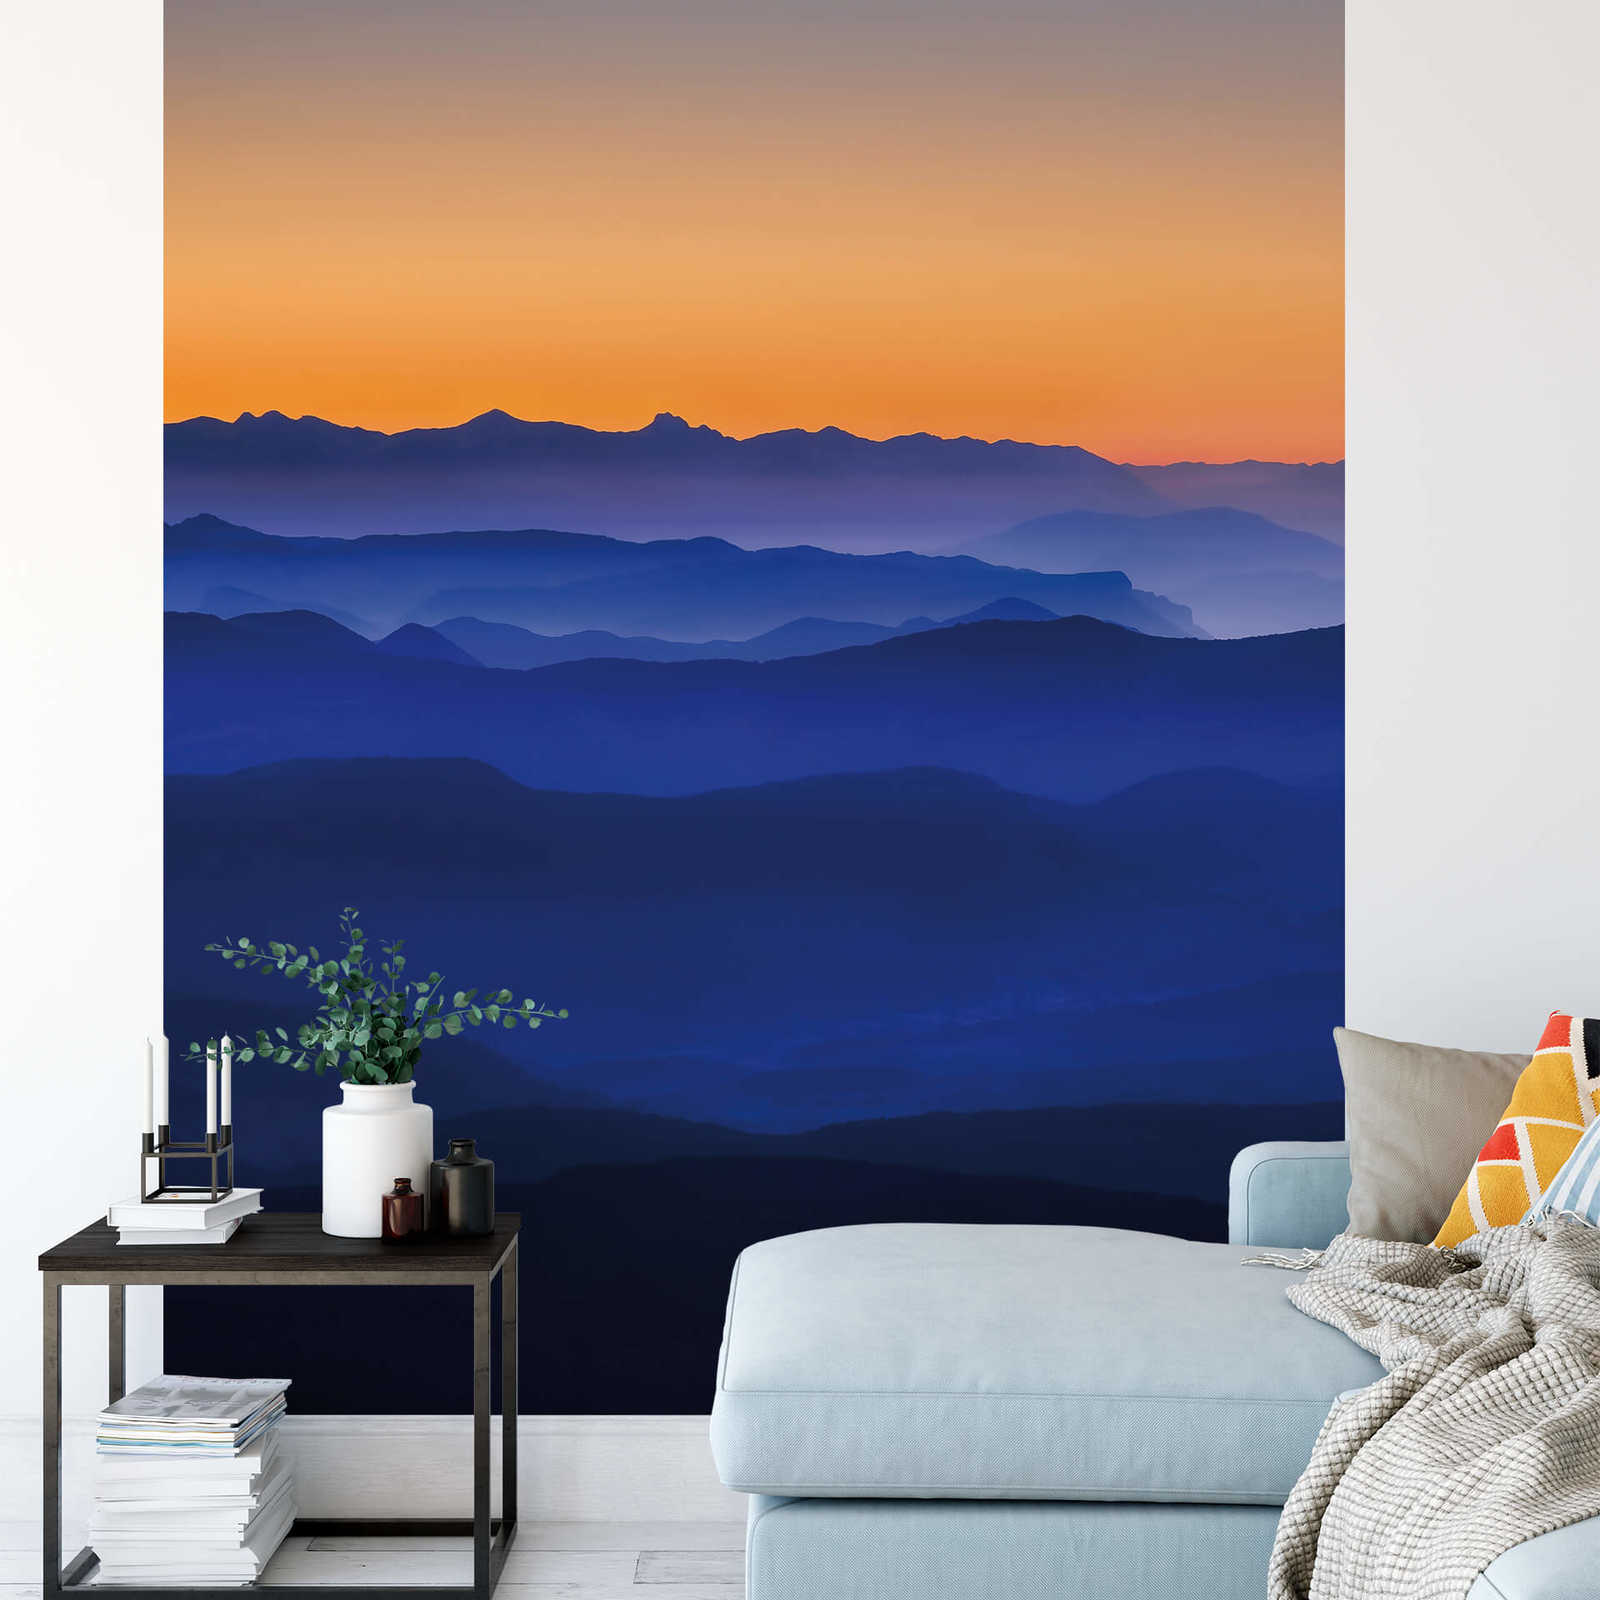             Fototapete Berge in Dämmerung – Blau, Orange, Gelb
        